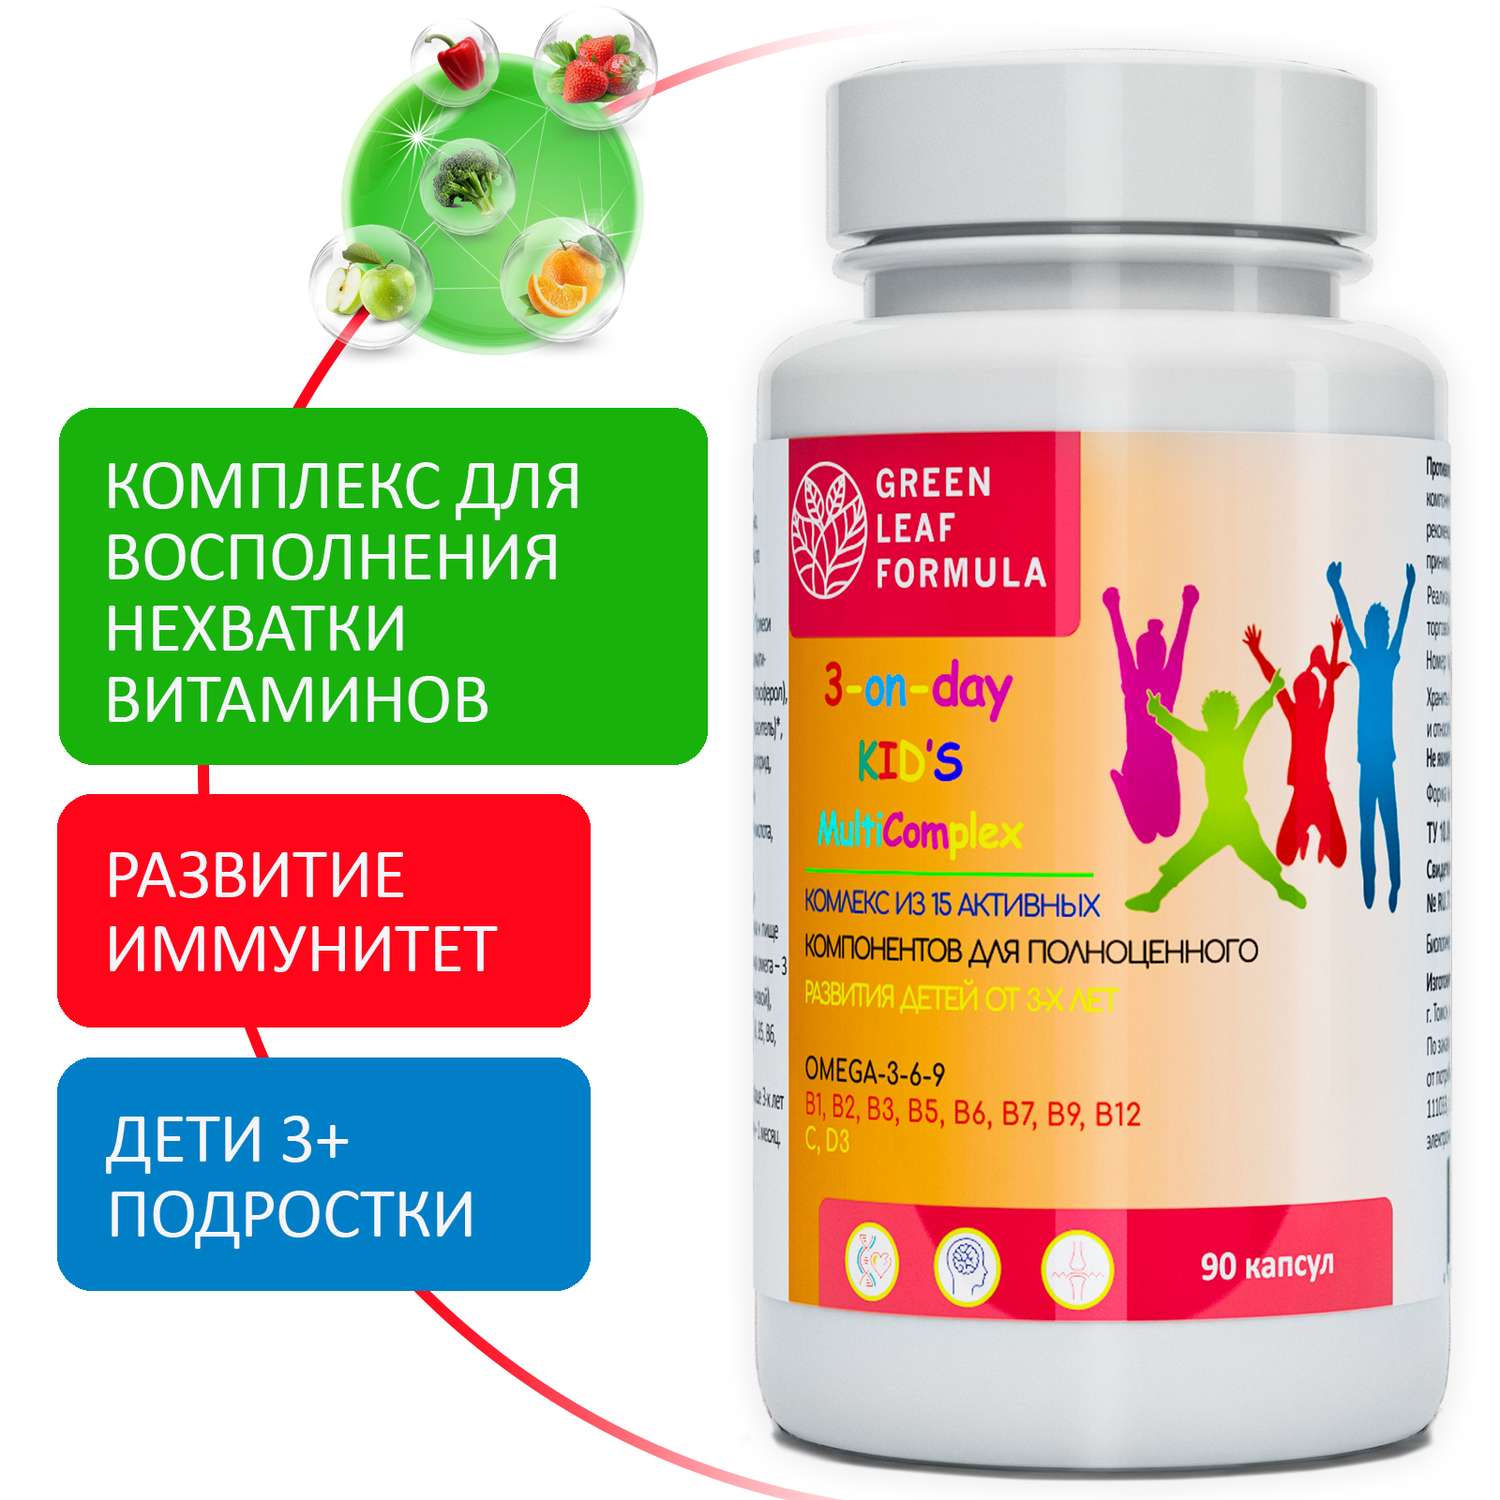 Детский мультикомплекс Green Leaf Formula омега 3-6-9 витамины B А Е D3 С 2 банки по 90 капсул - фото 2